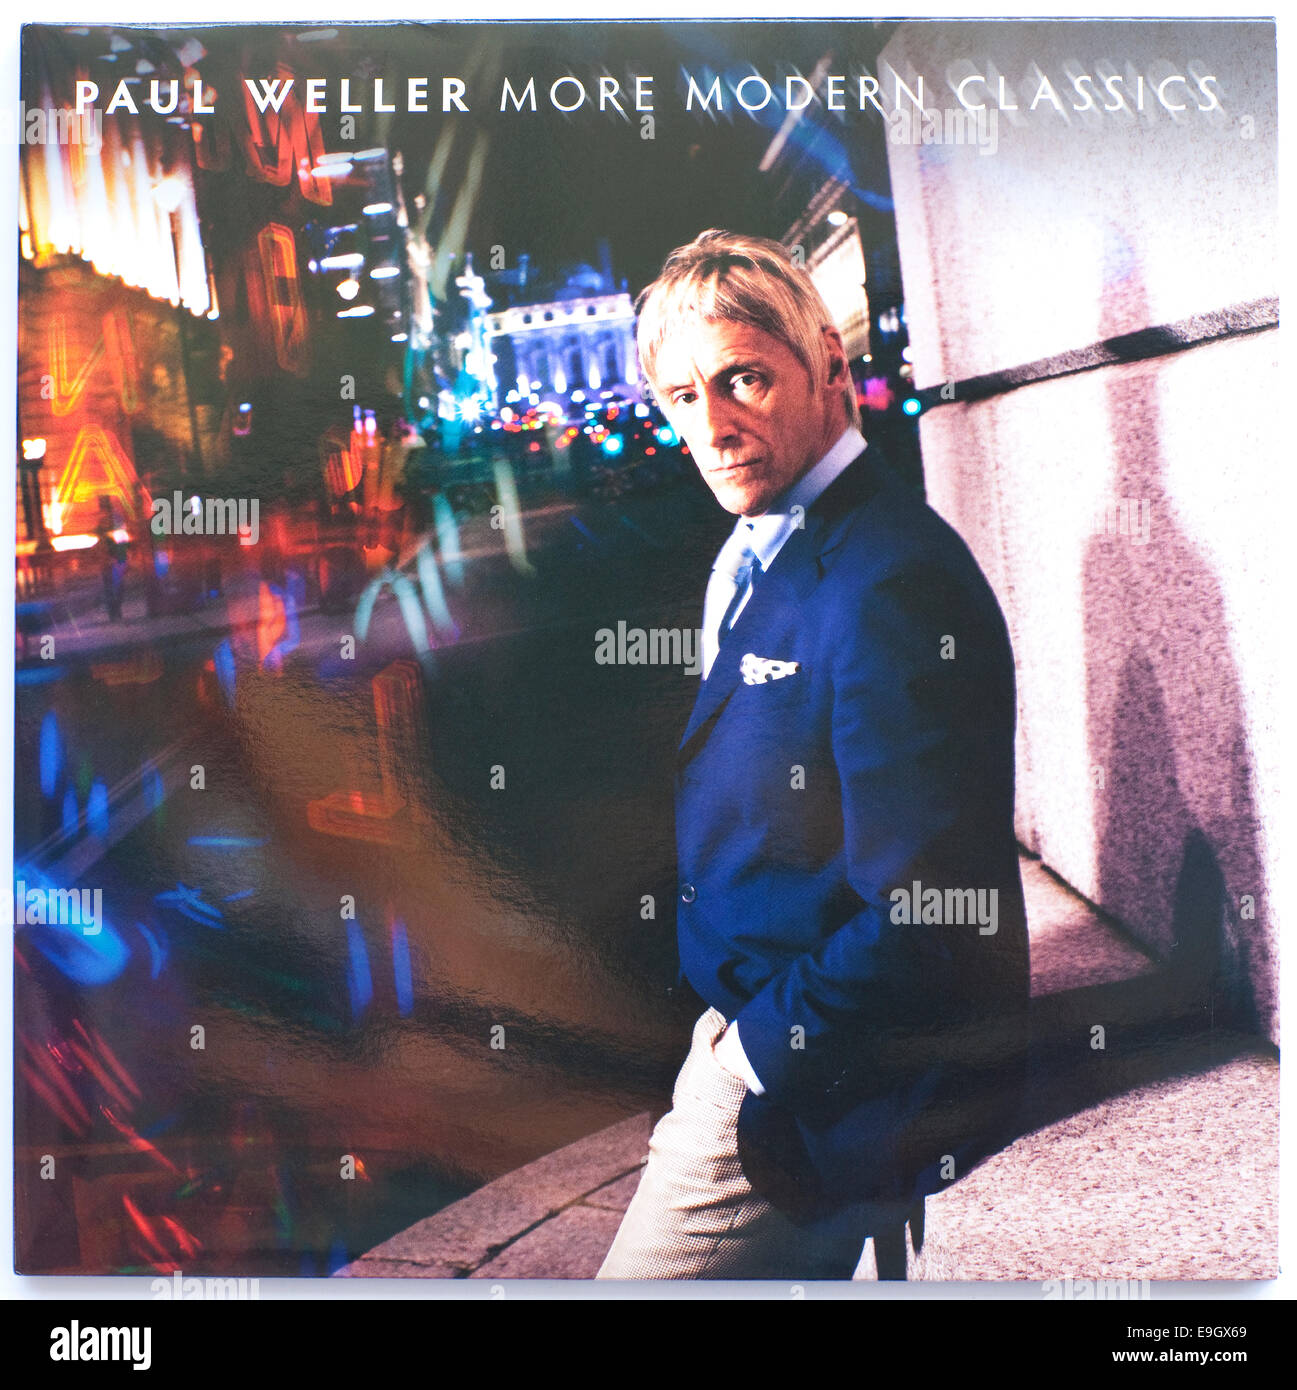 Portada de Paul Weller's 'More Modern Classics' - 2014 doble Album on 12' vinilo - solo uso editorial Foto de stock